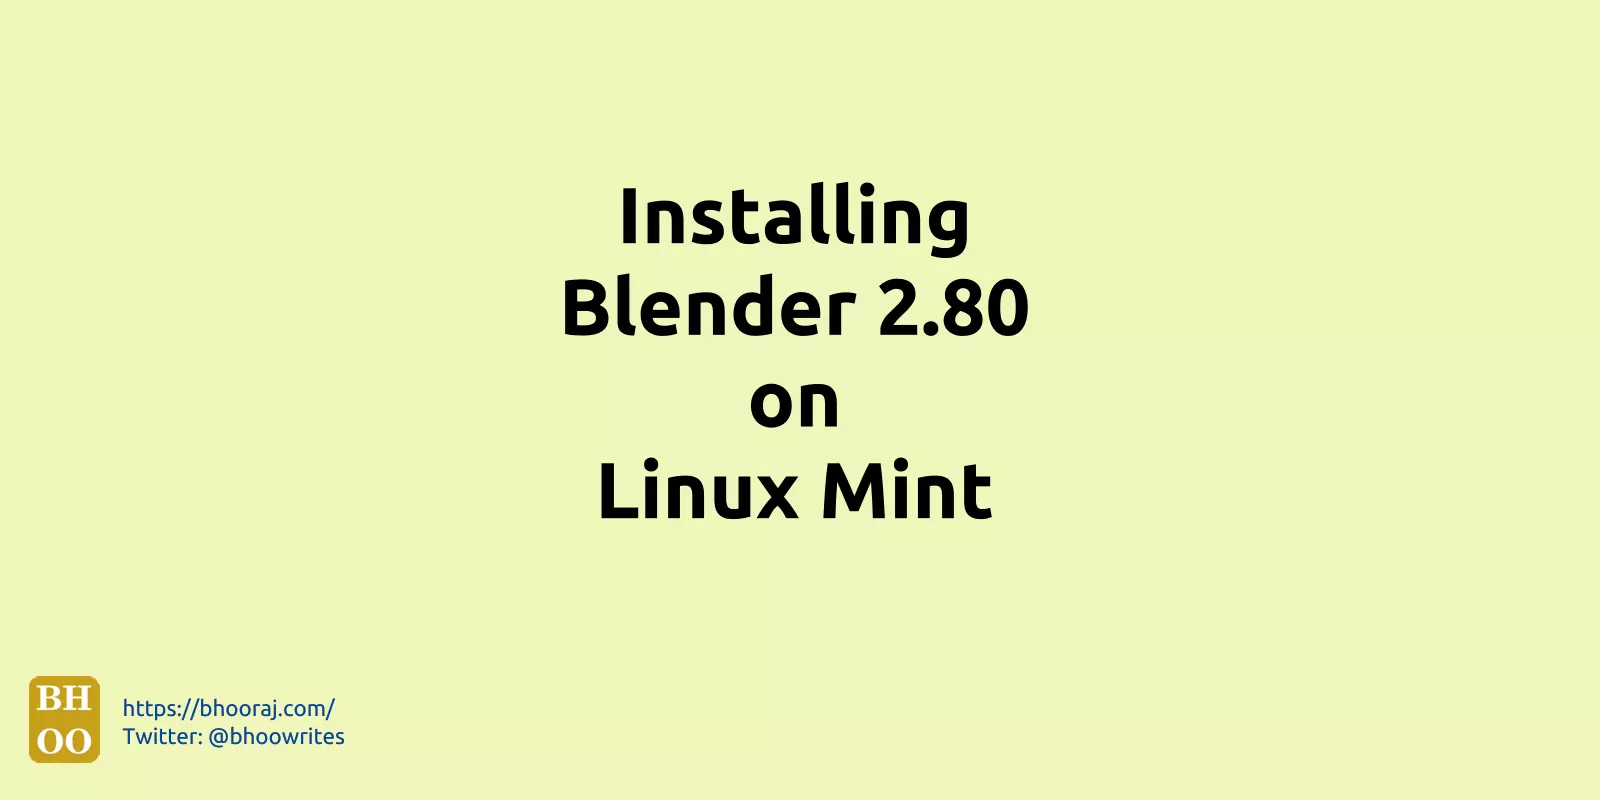 Installing Blender 2.80 on Linux Mint